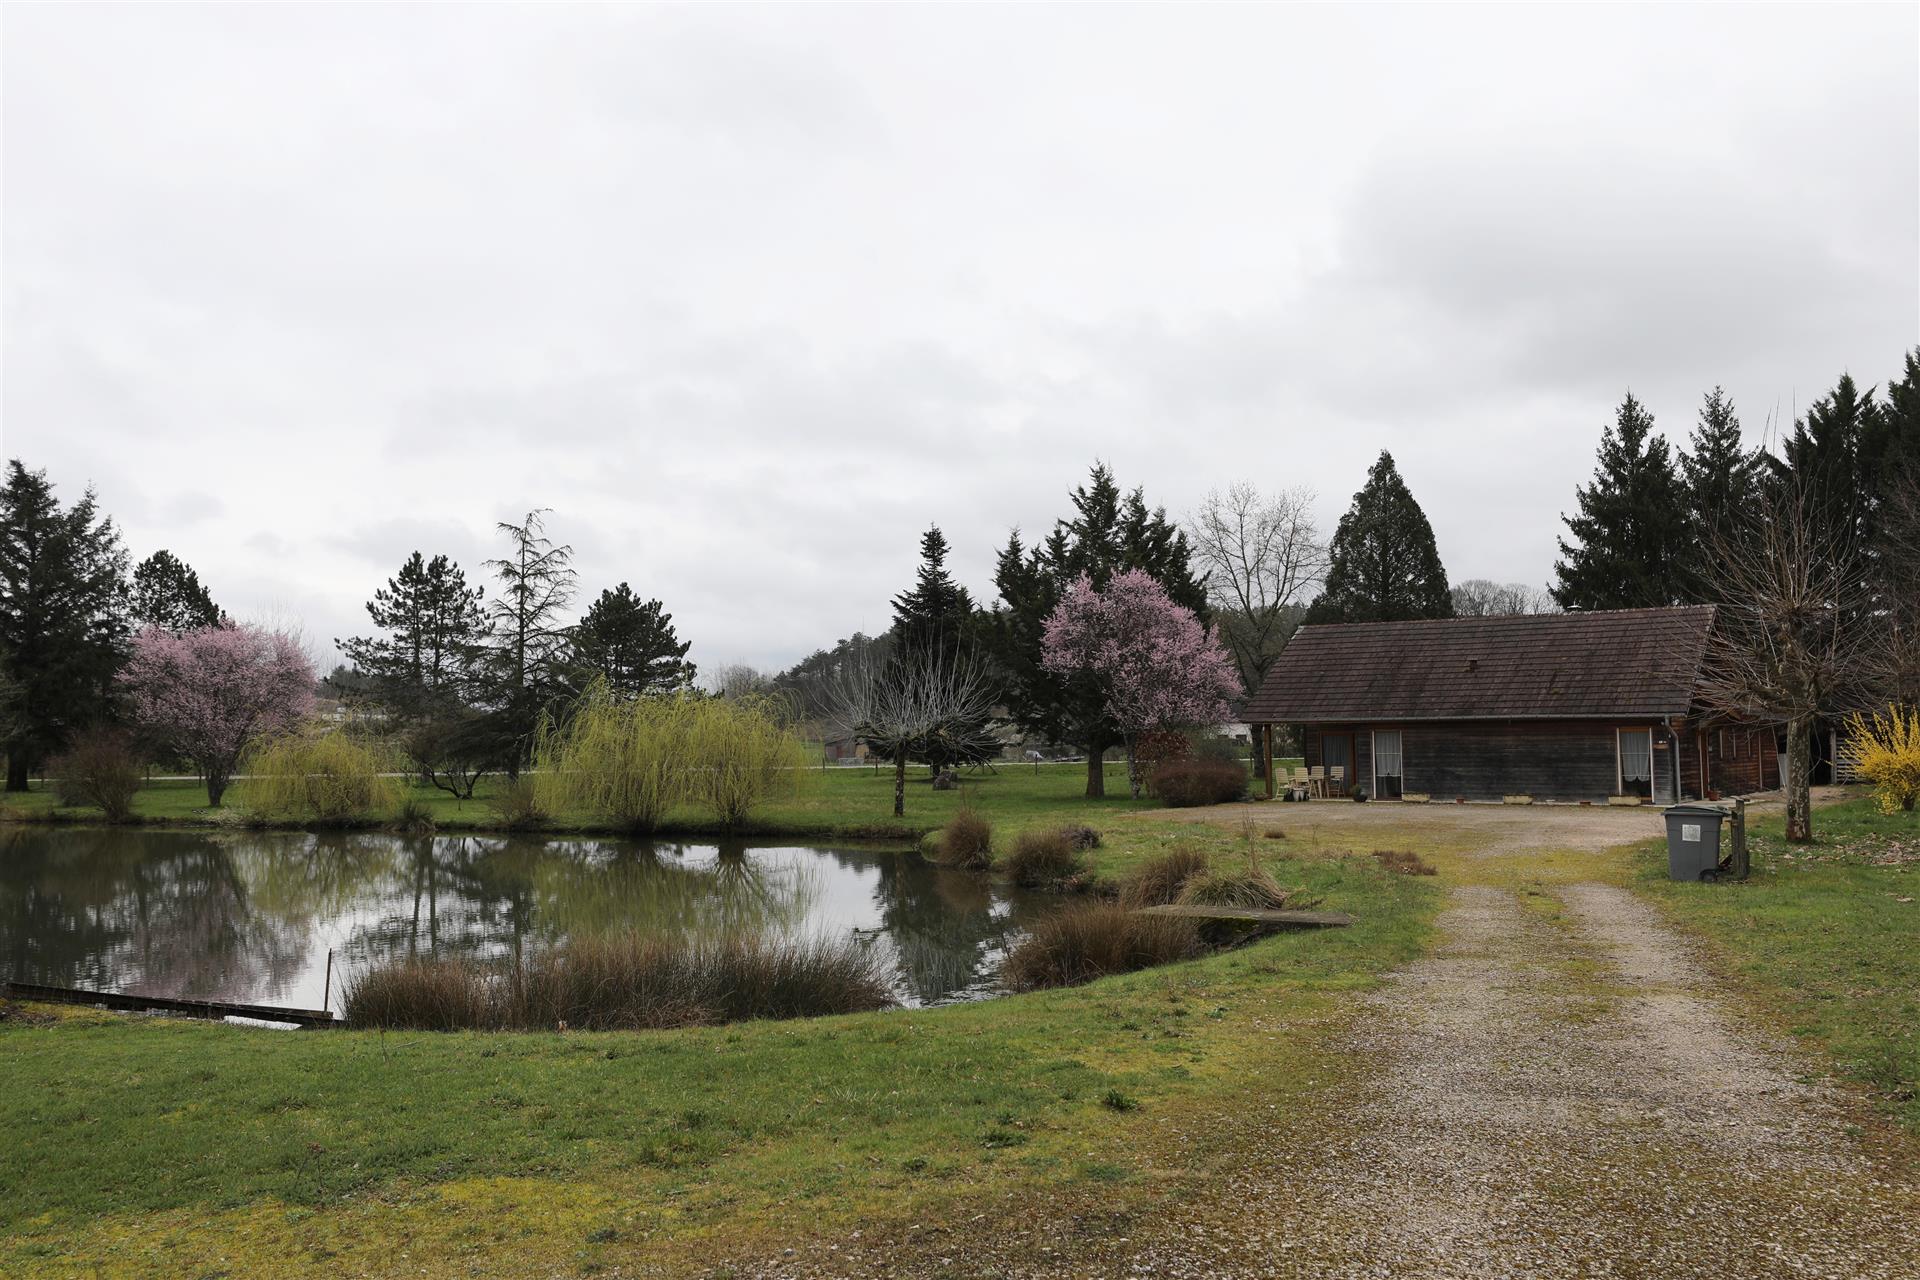 Romantic lakeside estate near the Saône